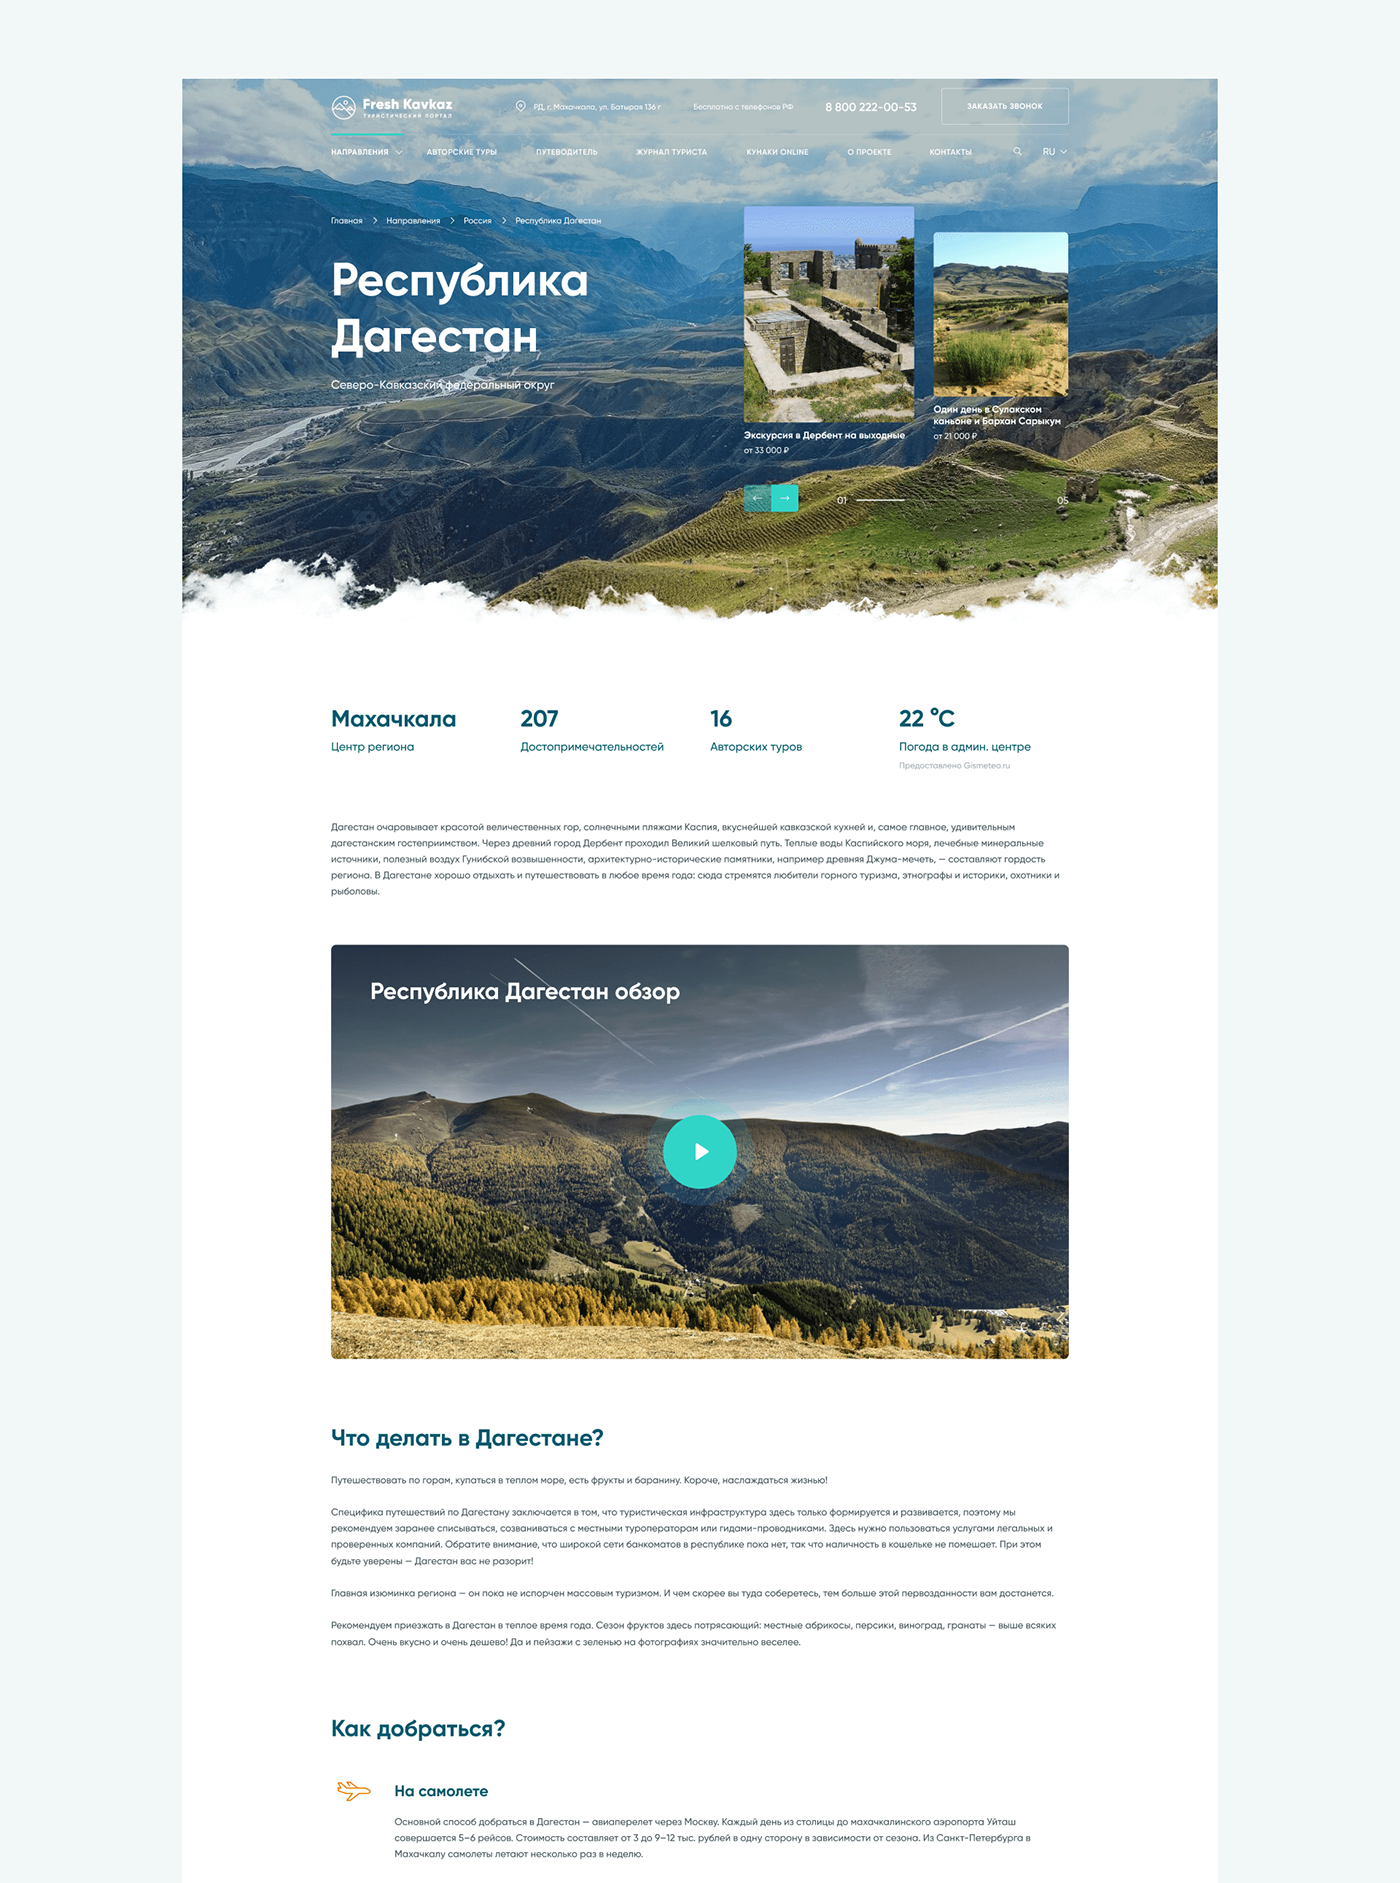 landing landing page UI ui design Web Design  Webdesign Website Website Design mountains Travel